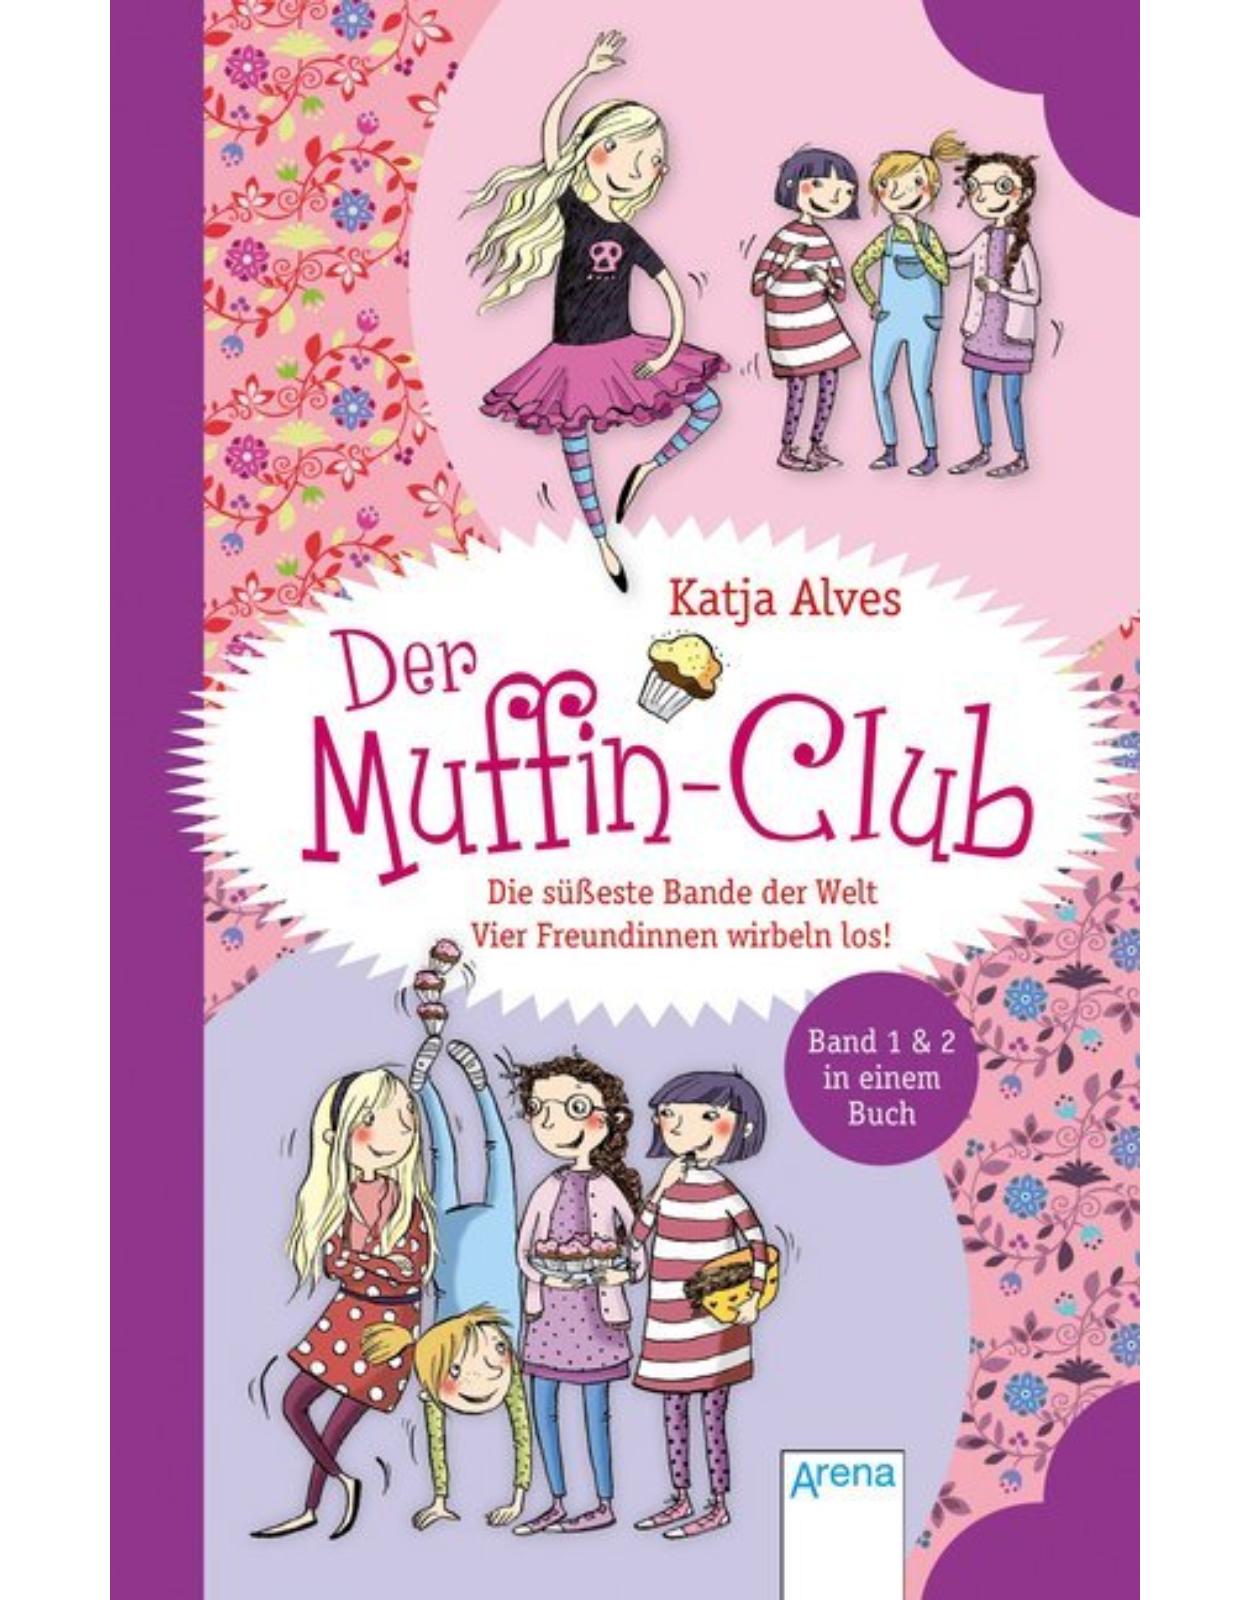 Der Muffin-Club - Die subeste Bande der Welt Vier Freundinnen wirbeln los!